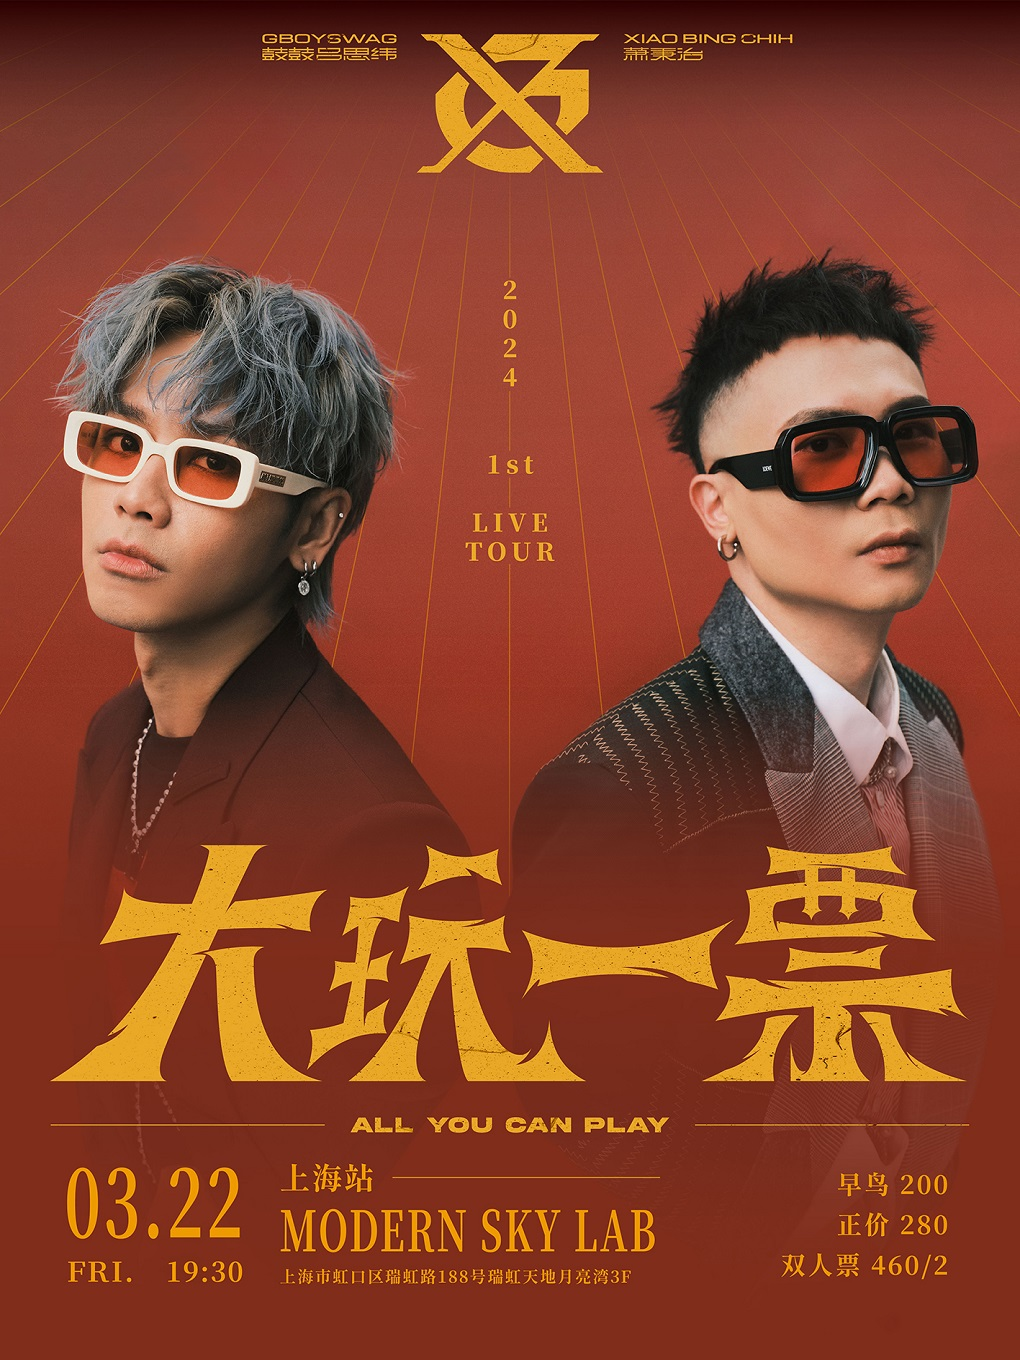 [上海]GX《大玩一票ALL YOU CAN PLAY》巡回演唱会-上海站